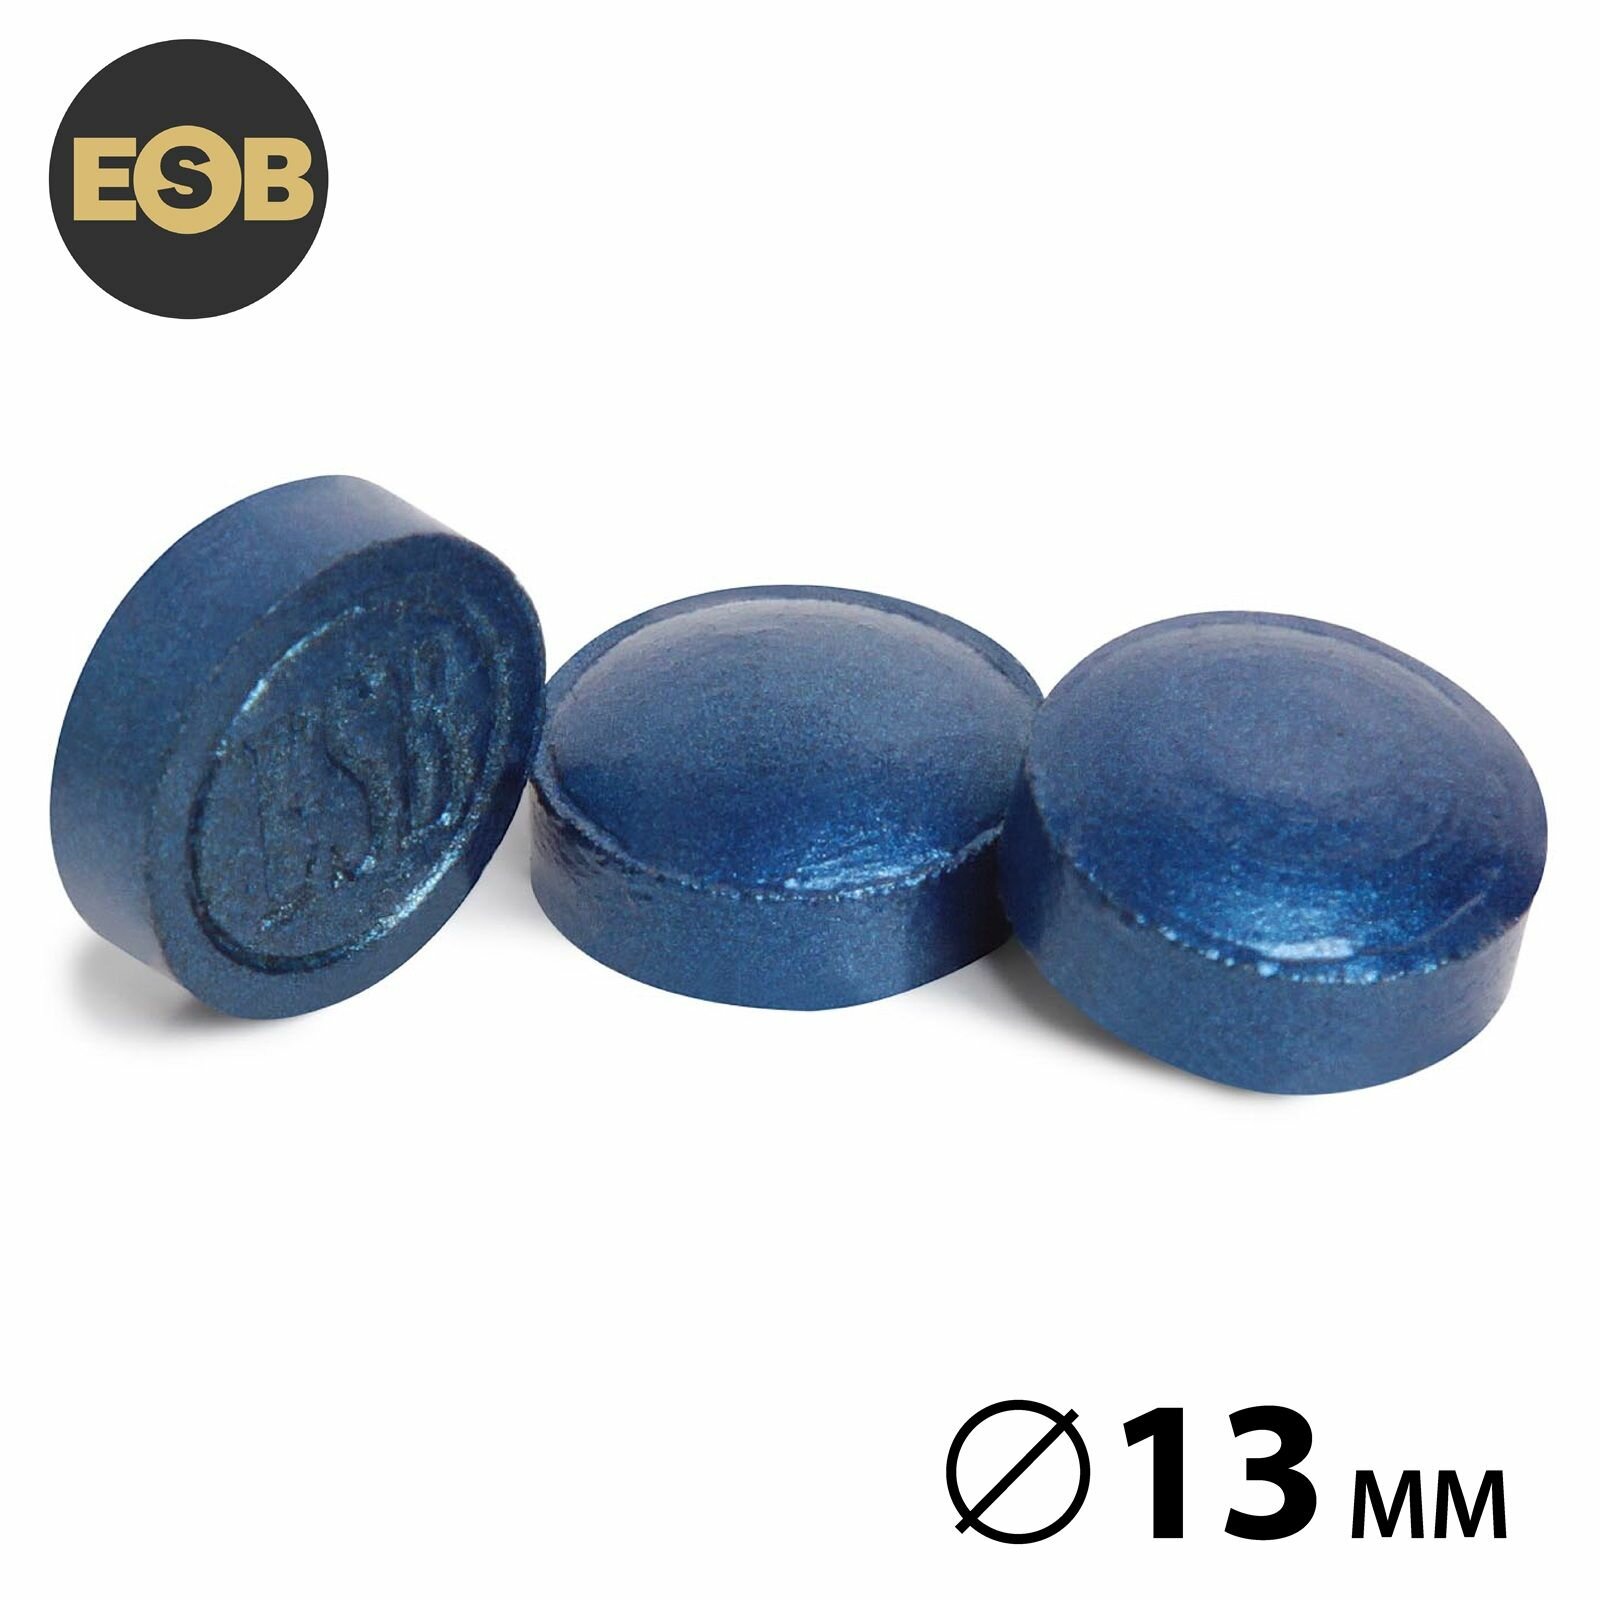 Наклейка для кия ESB Pro синяя 13 мм Medium, прессованная, 1шт.